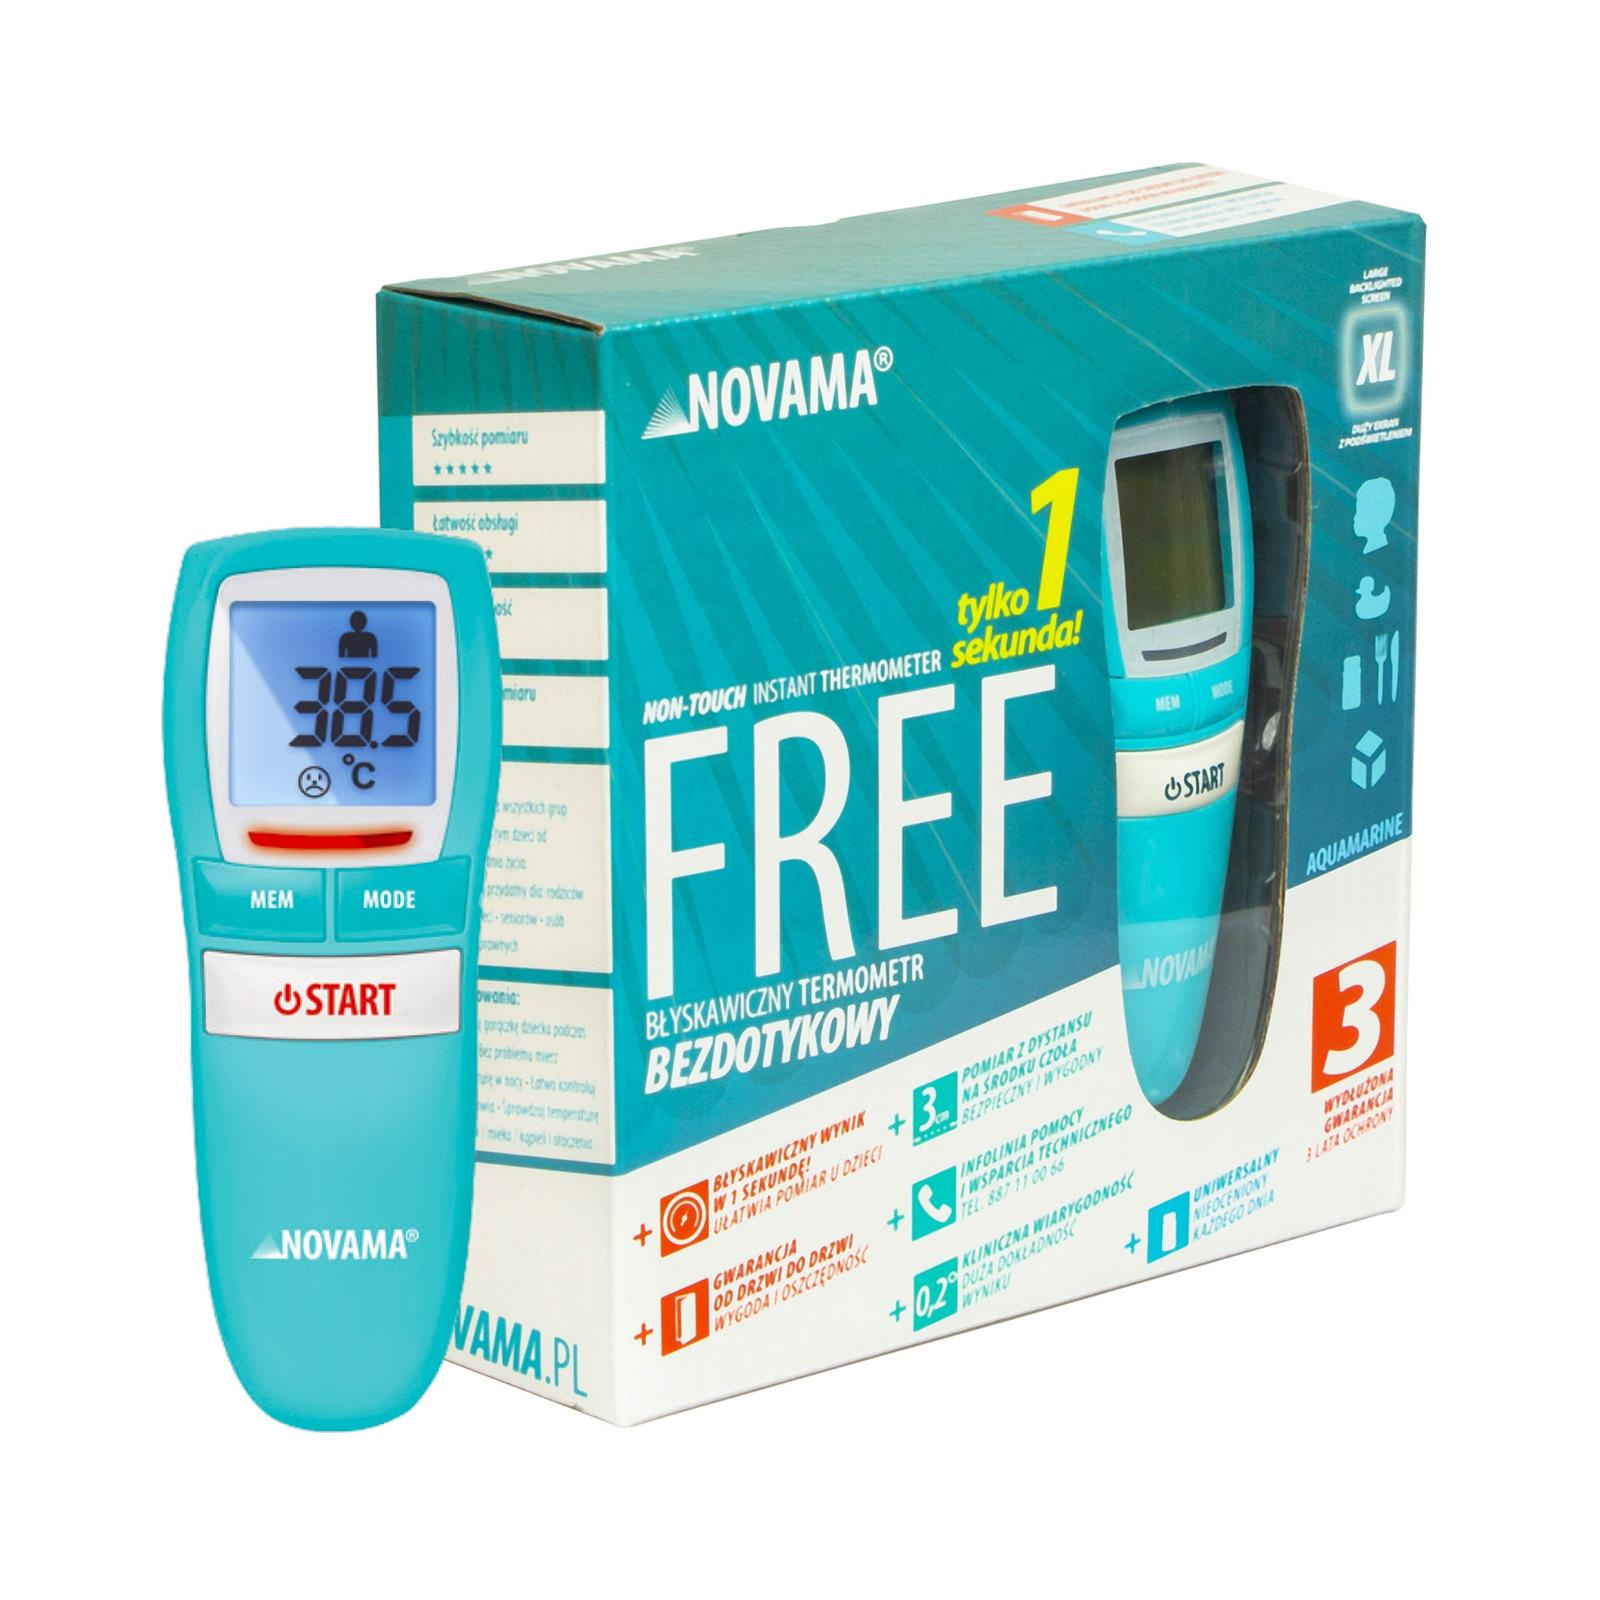 NOVAMA Free Colors Aquamarine Termometr bezdotykowy mierzy w 1 sekundę z 3 cm z 3 letnią gwarancją